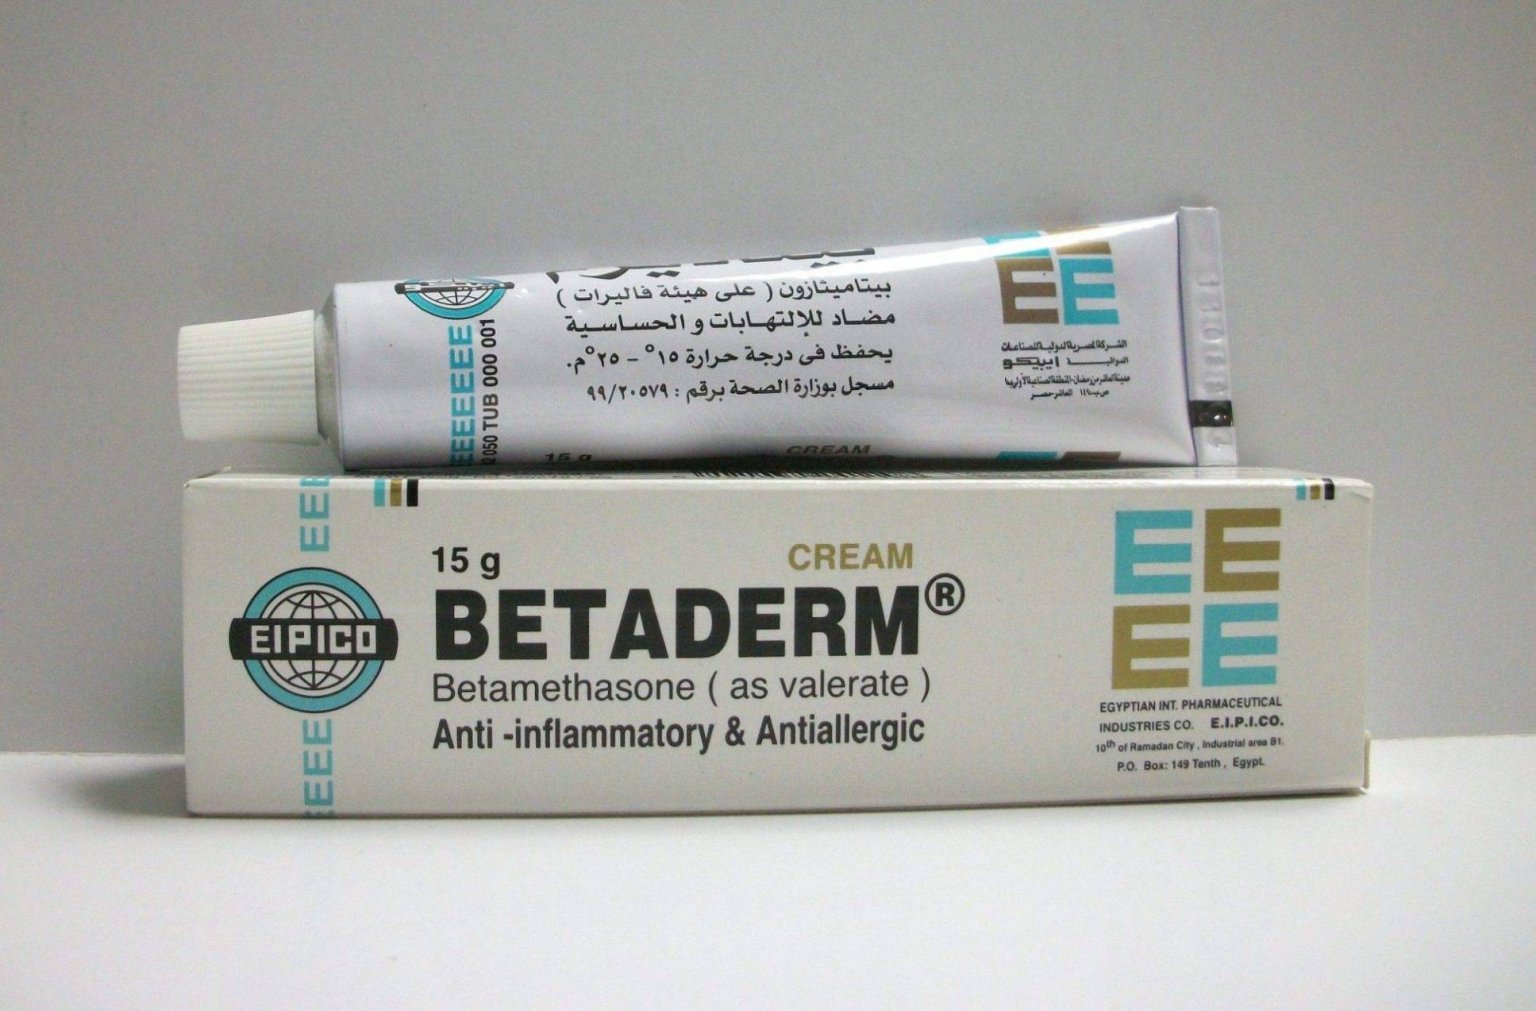 كريم بيتاديرم Betaderm استخداماته وأعراضه الجانبية - تريندات